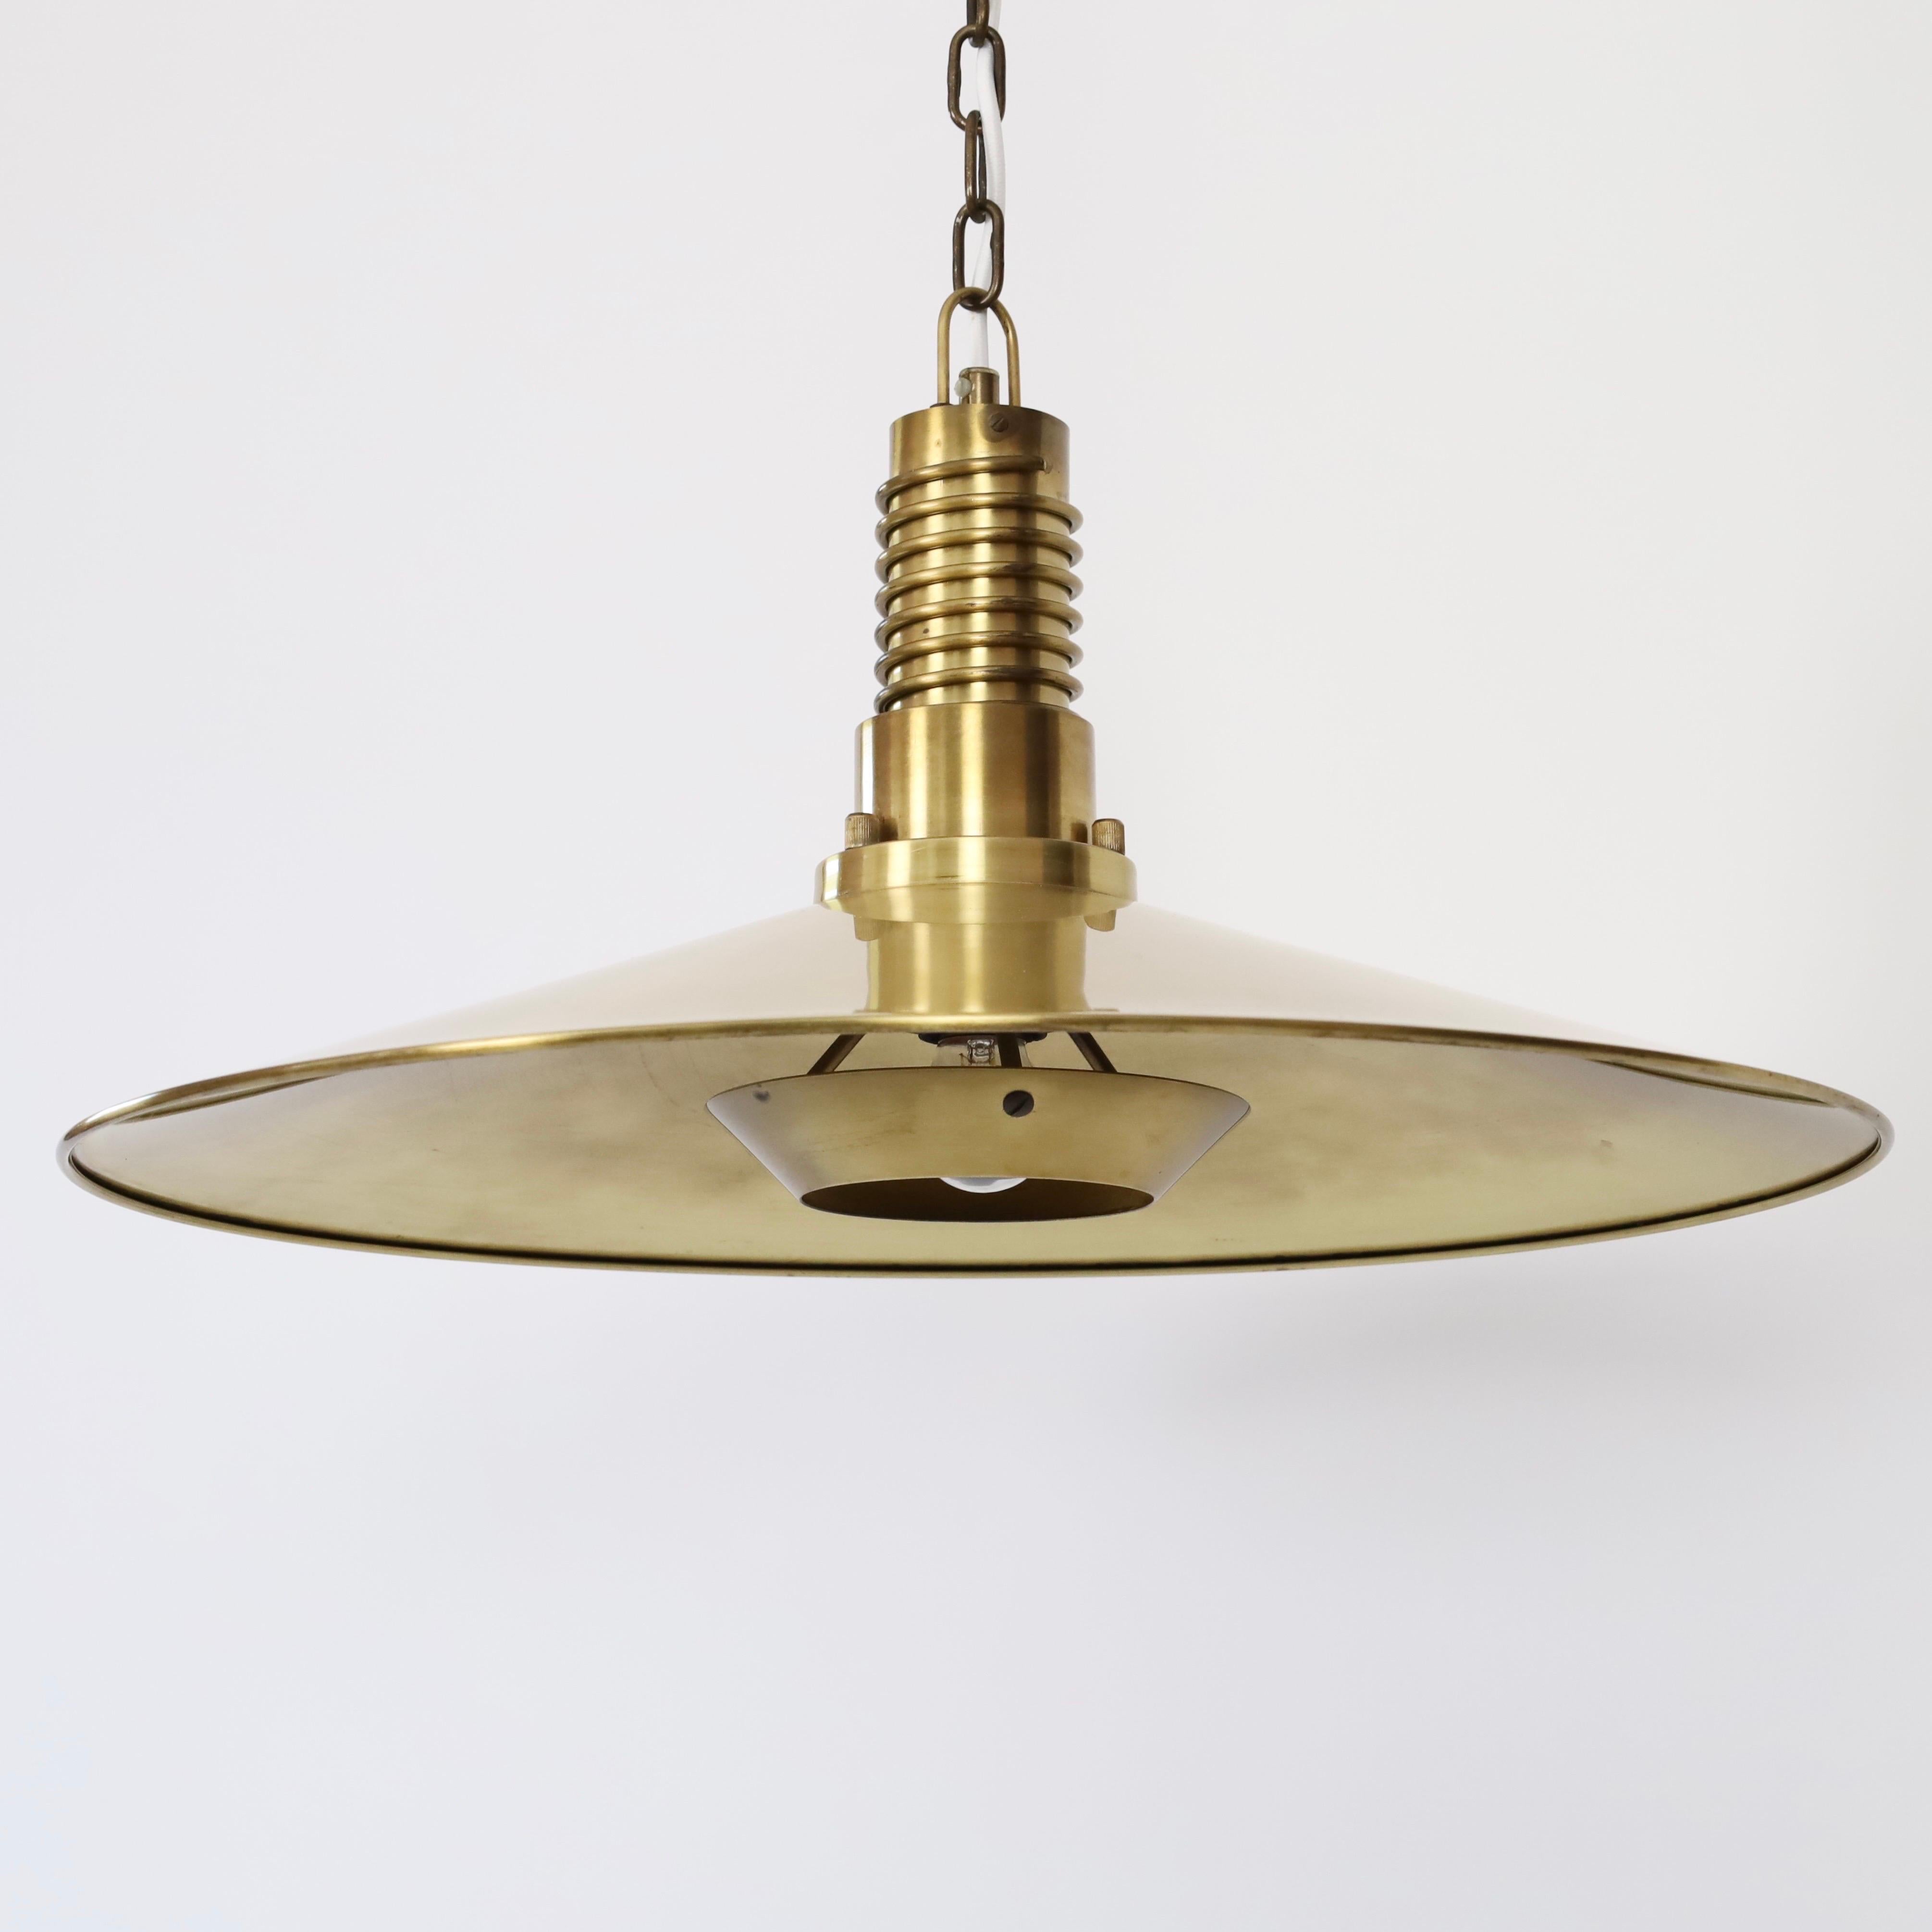 Substantial Danish Modern Brass Pendant Light by Fog & Morup, 1960s, Denmark For Sale 3